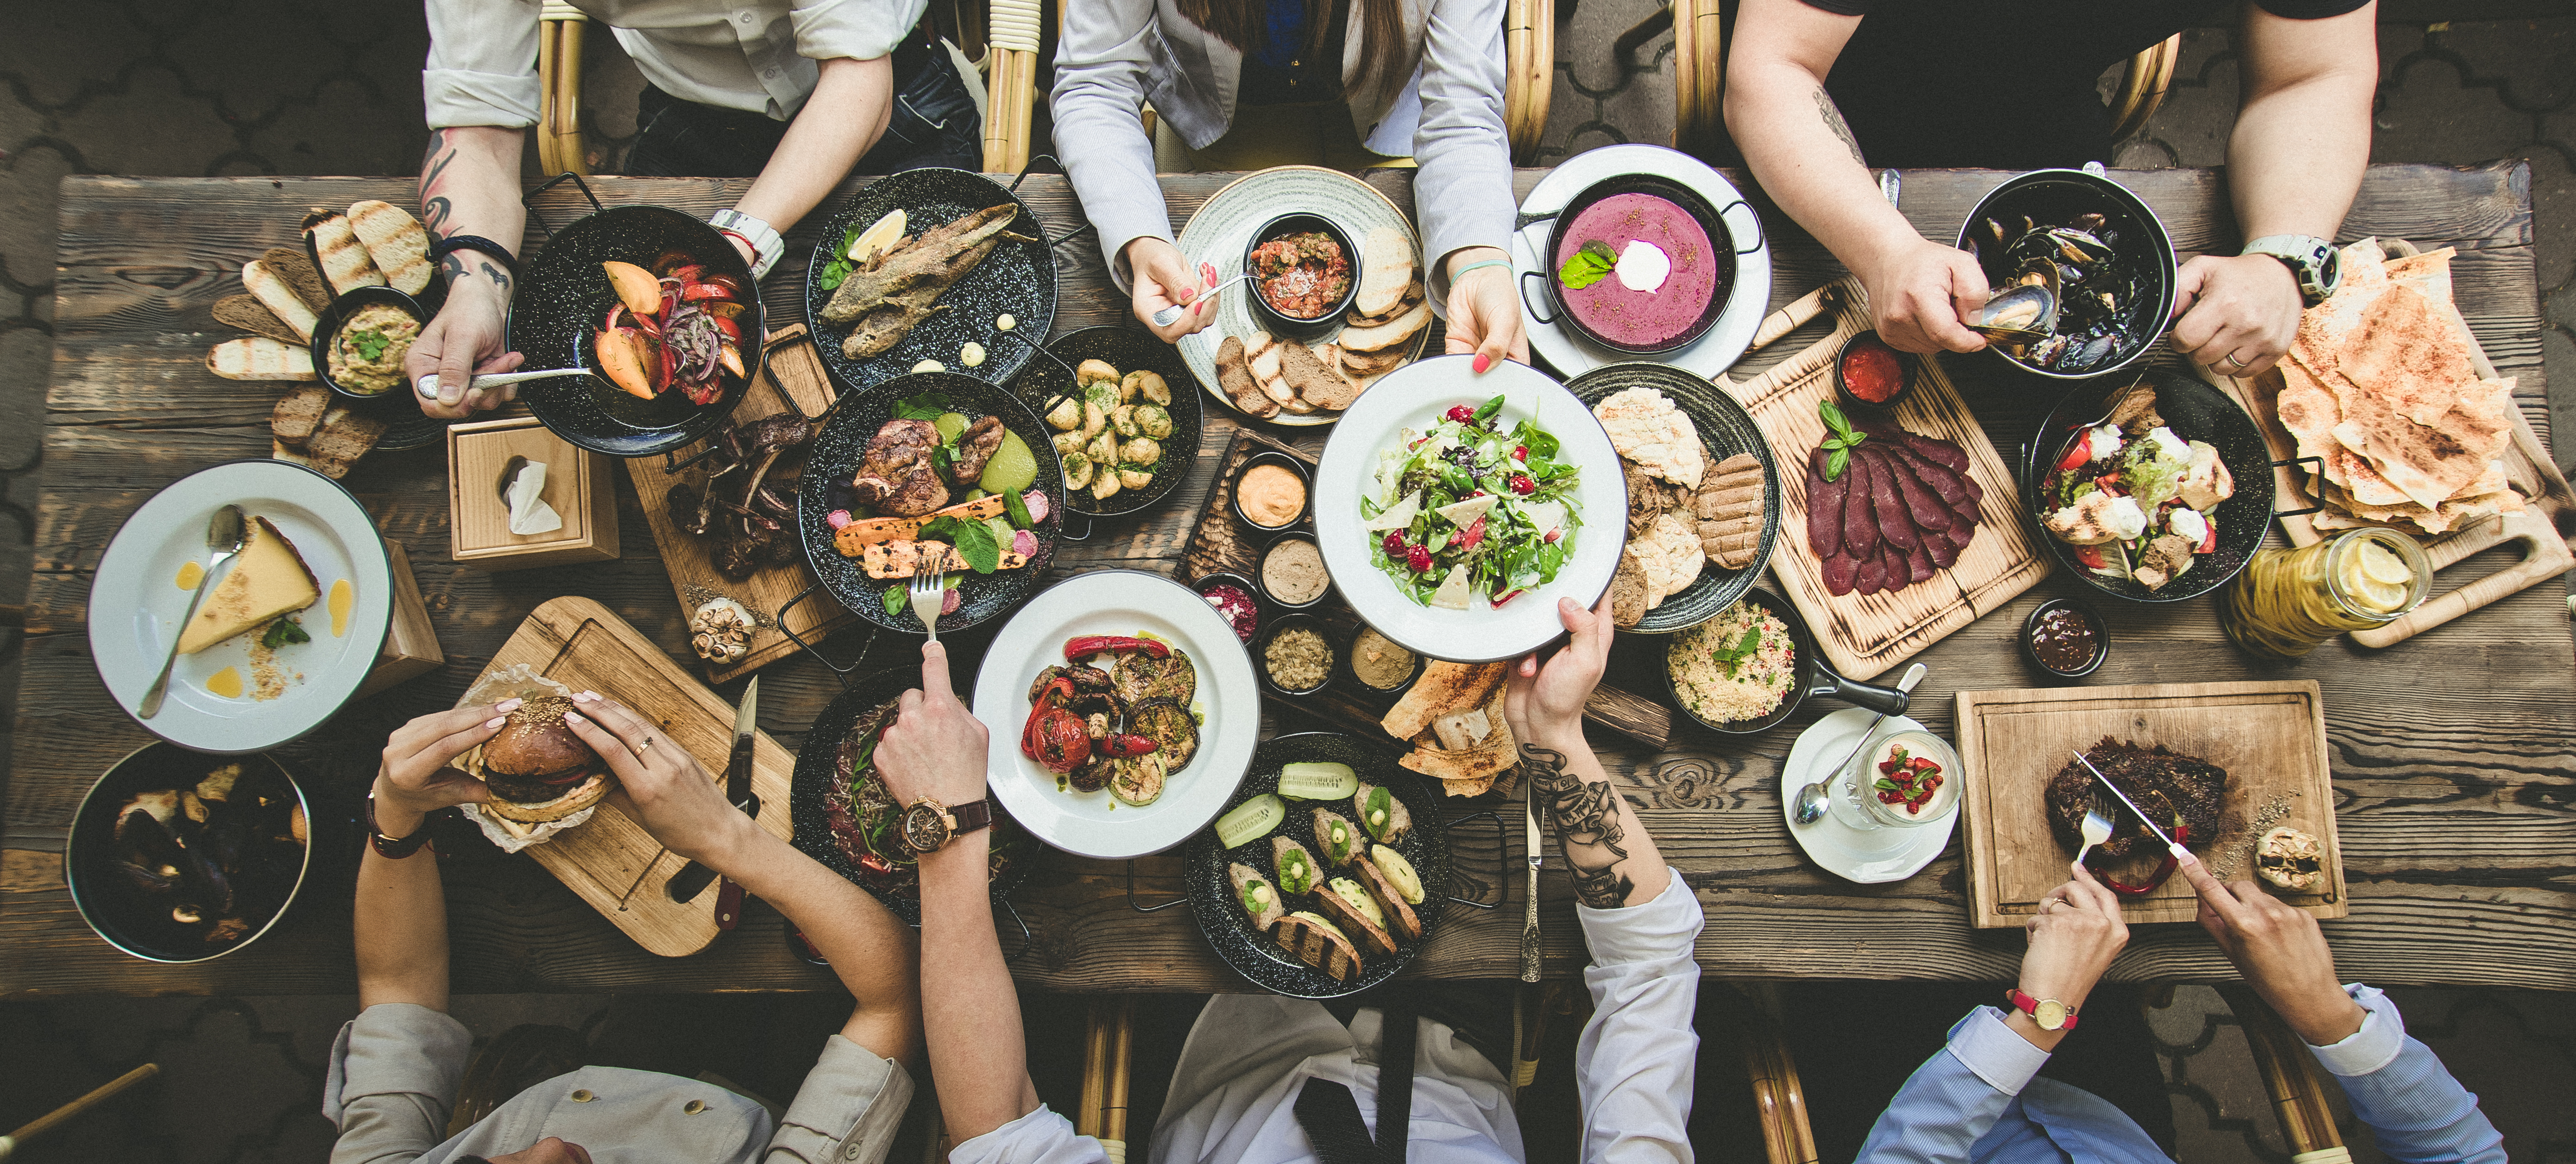 Cena extravagante en un restaurante | Foto: Shutterstock